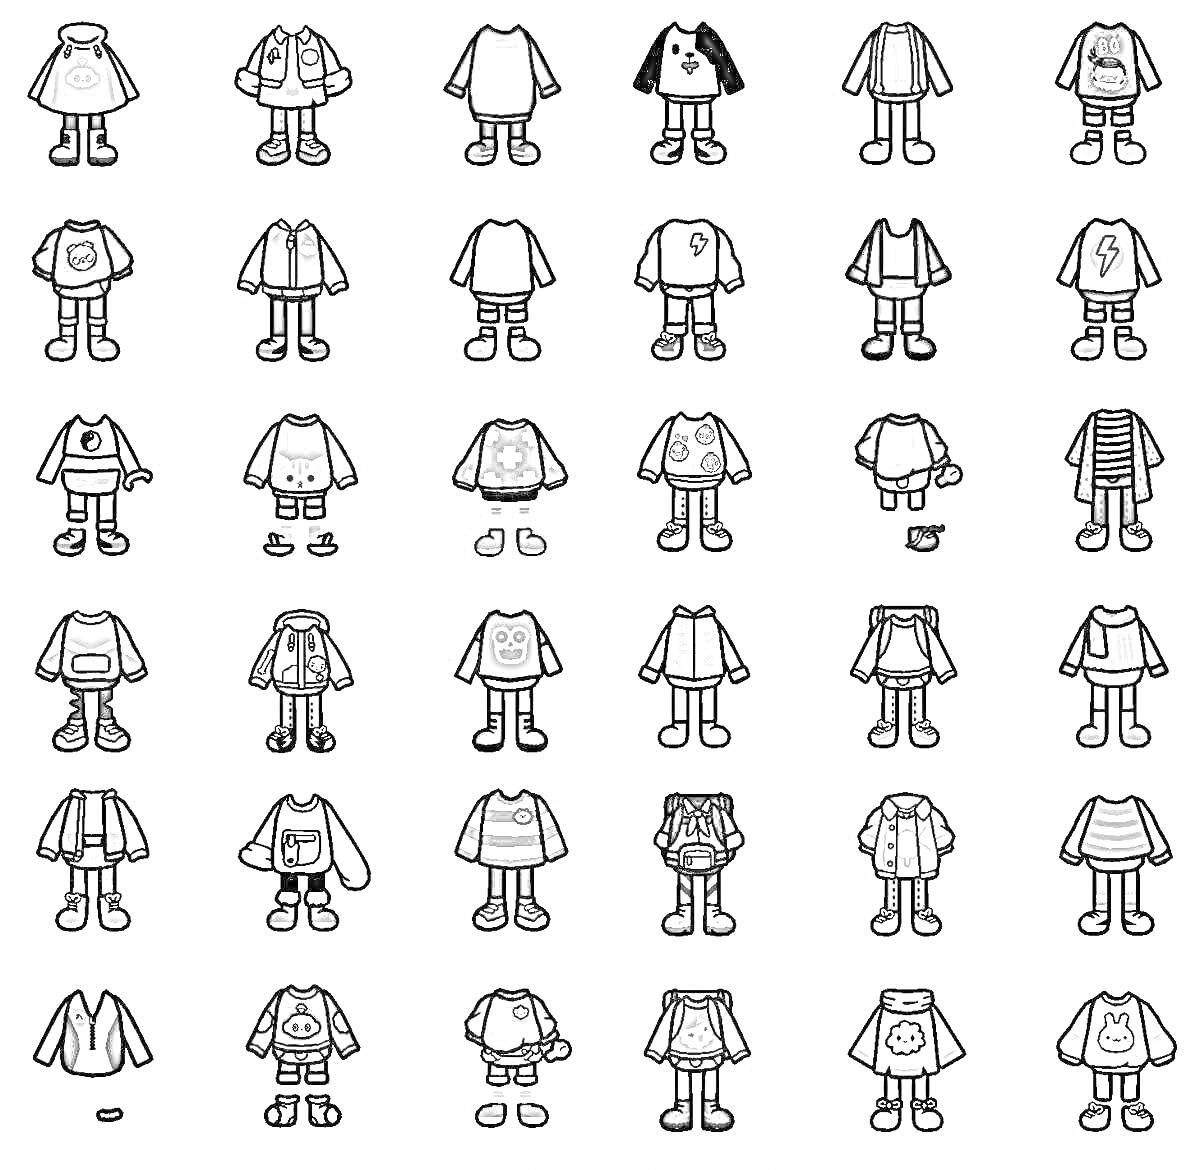 Раскраска Раскраска с персонажами Toca Boca без одежды (видны только их тела и отдельные предметы одежды)